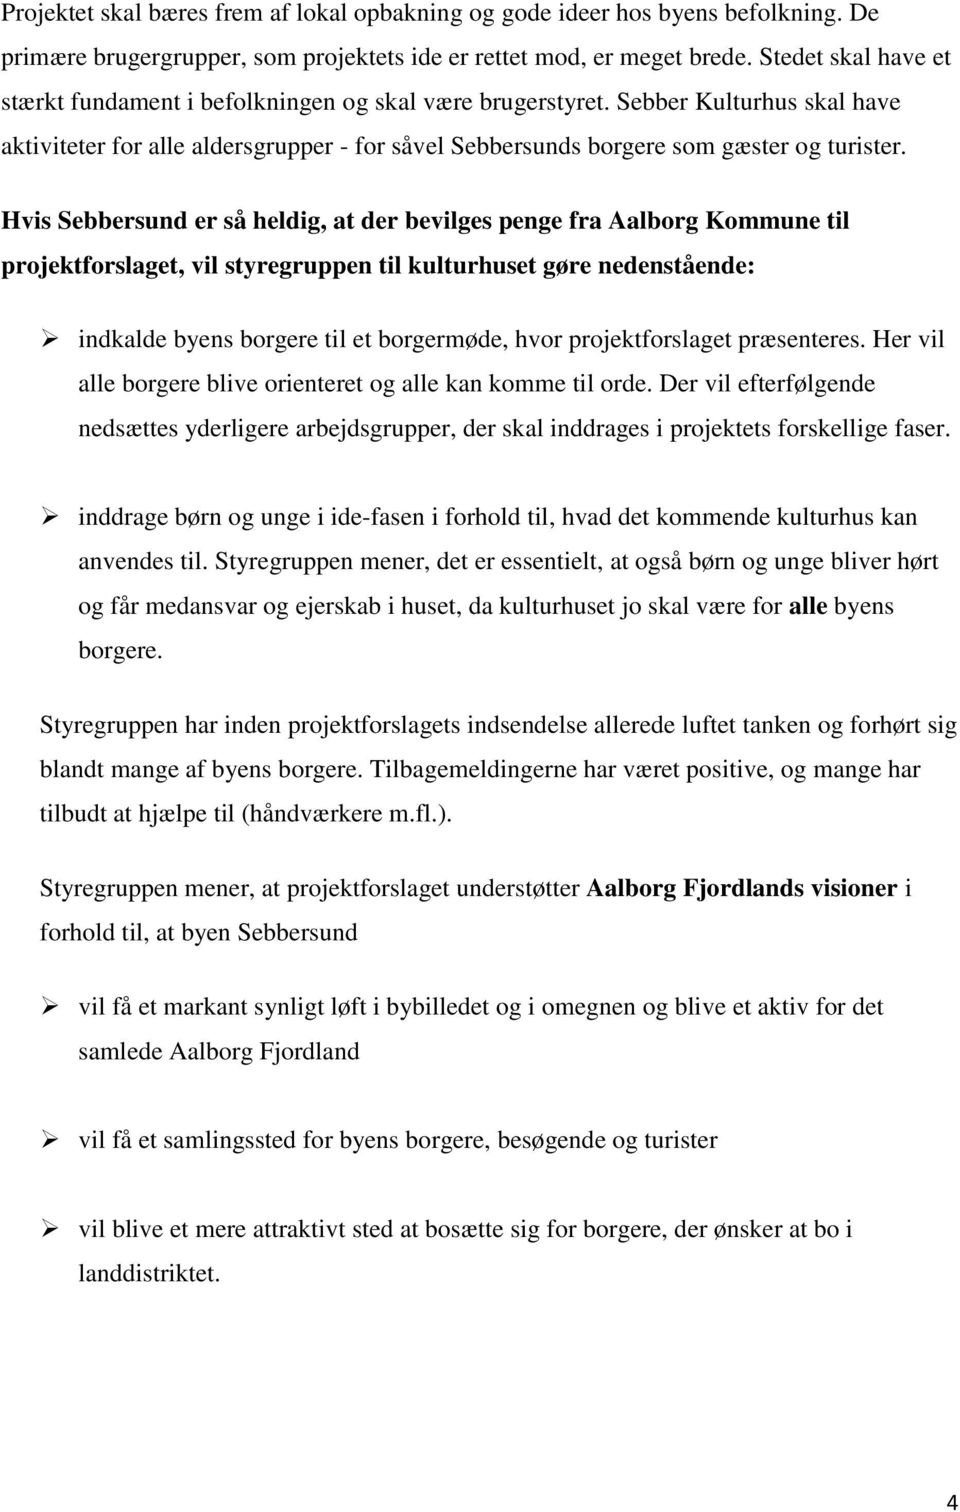 Hvis Sebbersund er så heldig, at der bevilges penge fra Aalborg Kommune til projektforslaget, vil styregruppen til kulturhuset gøre nedenstående: indkalde byens borgere til et borgermøde, hvor